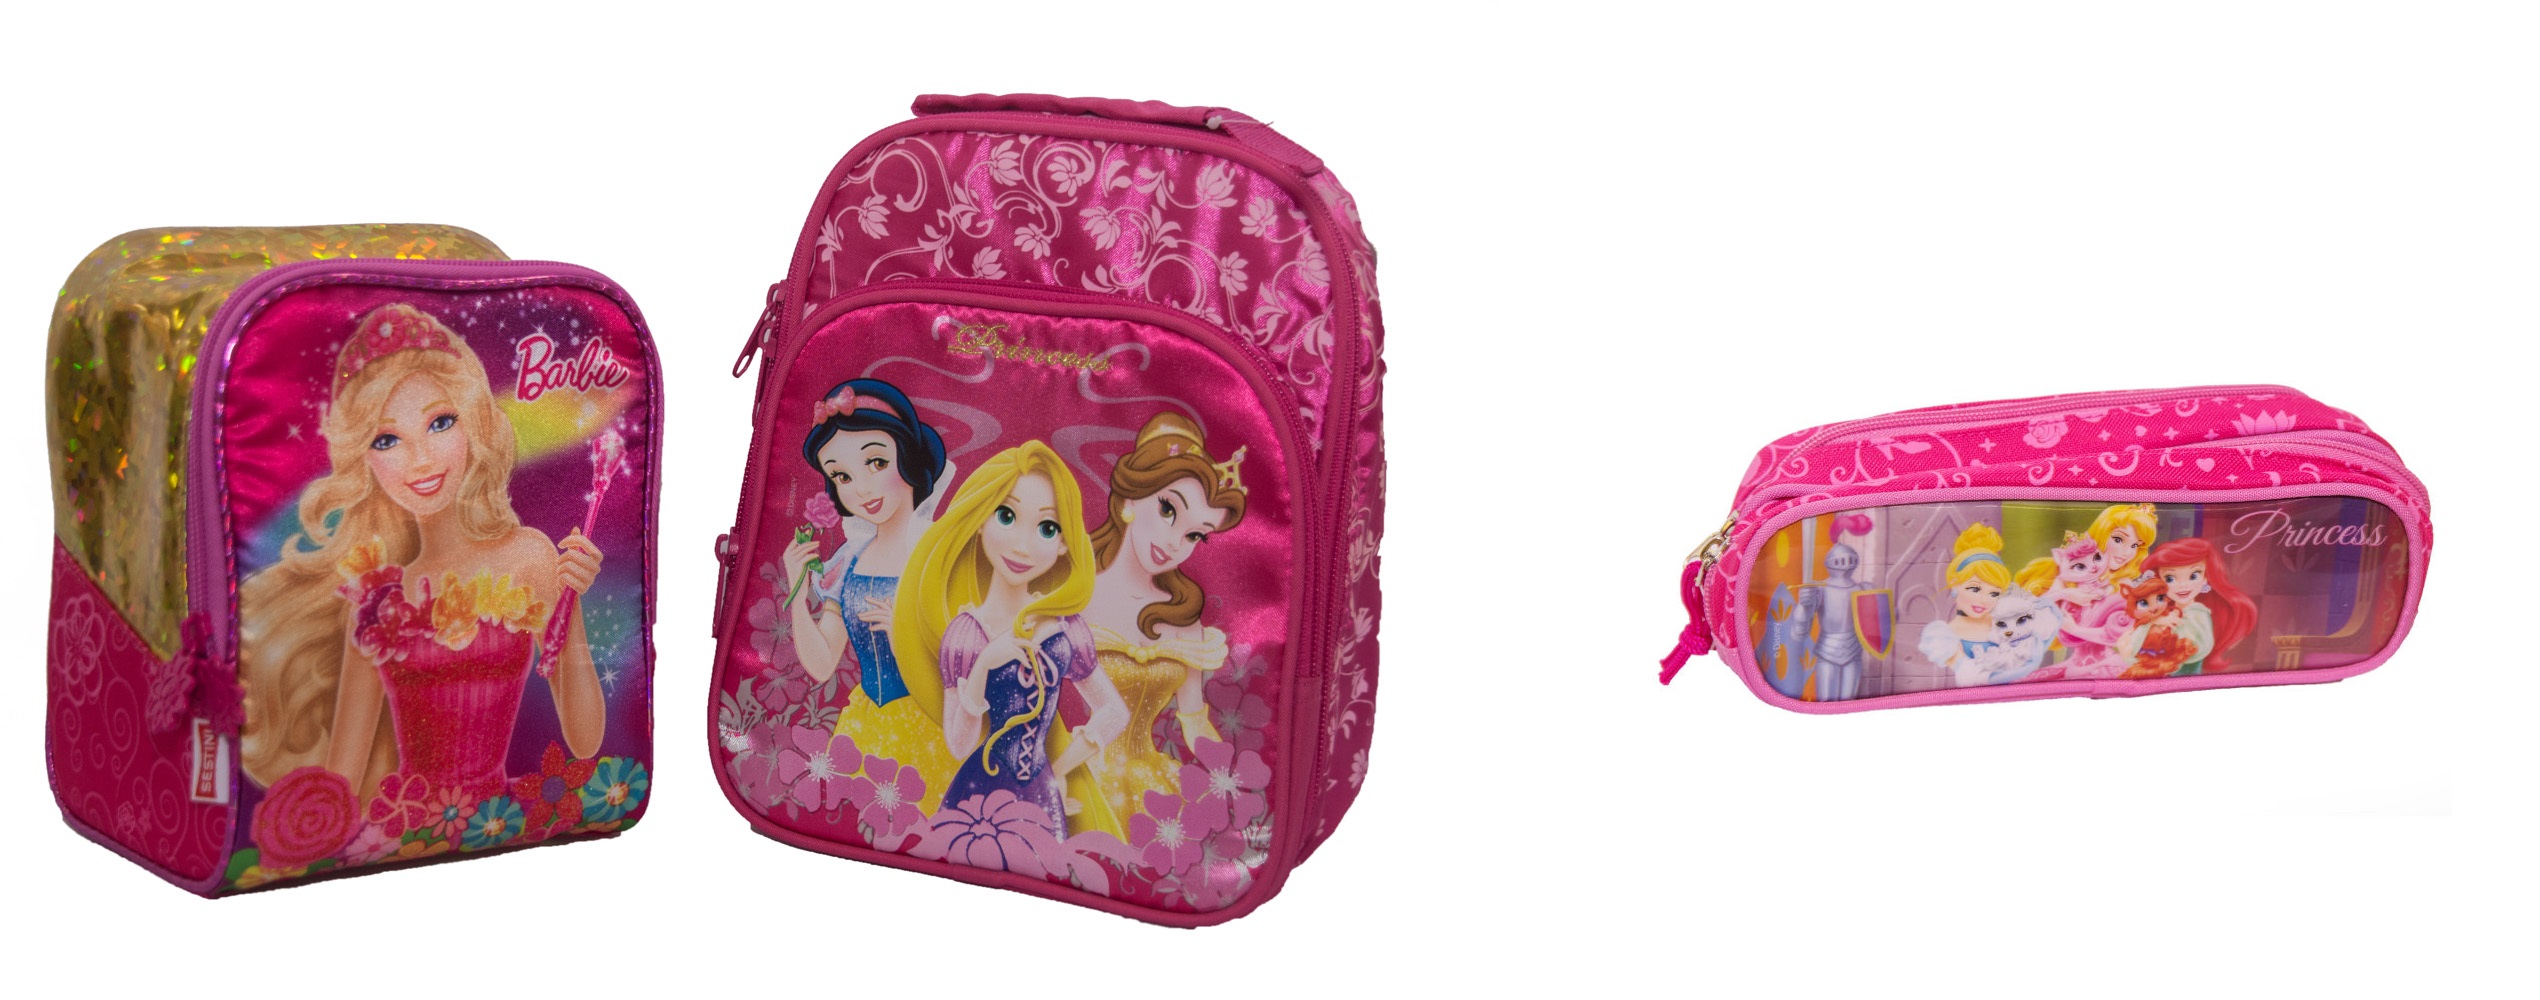 Lancheiras Barbie e Princesas Disney - Atacadão de Papelaria - Foto Giovanni Costa